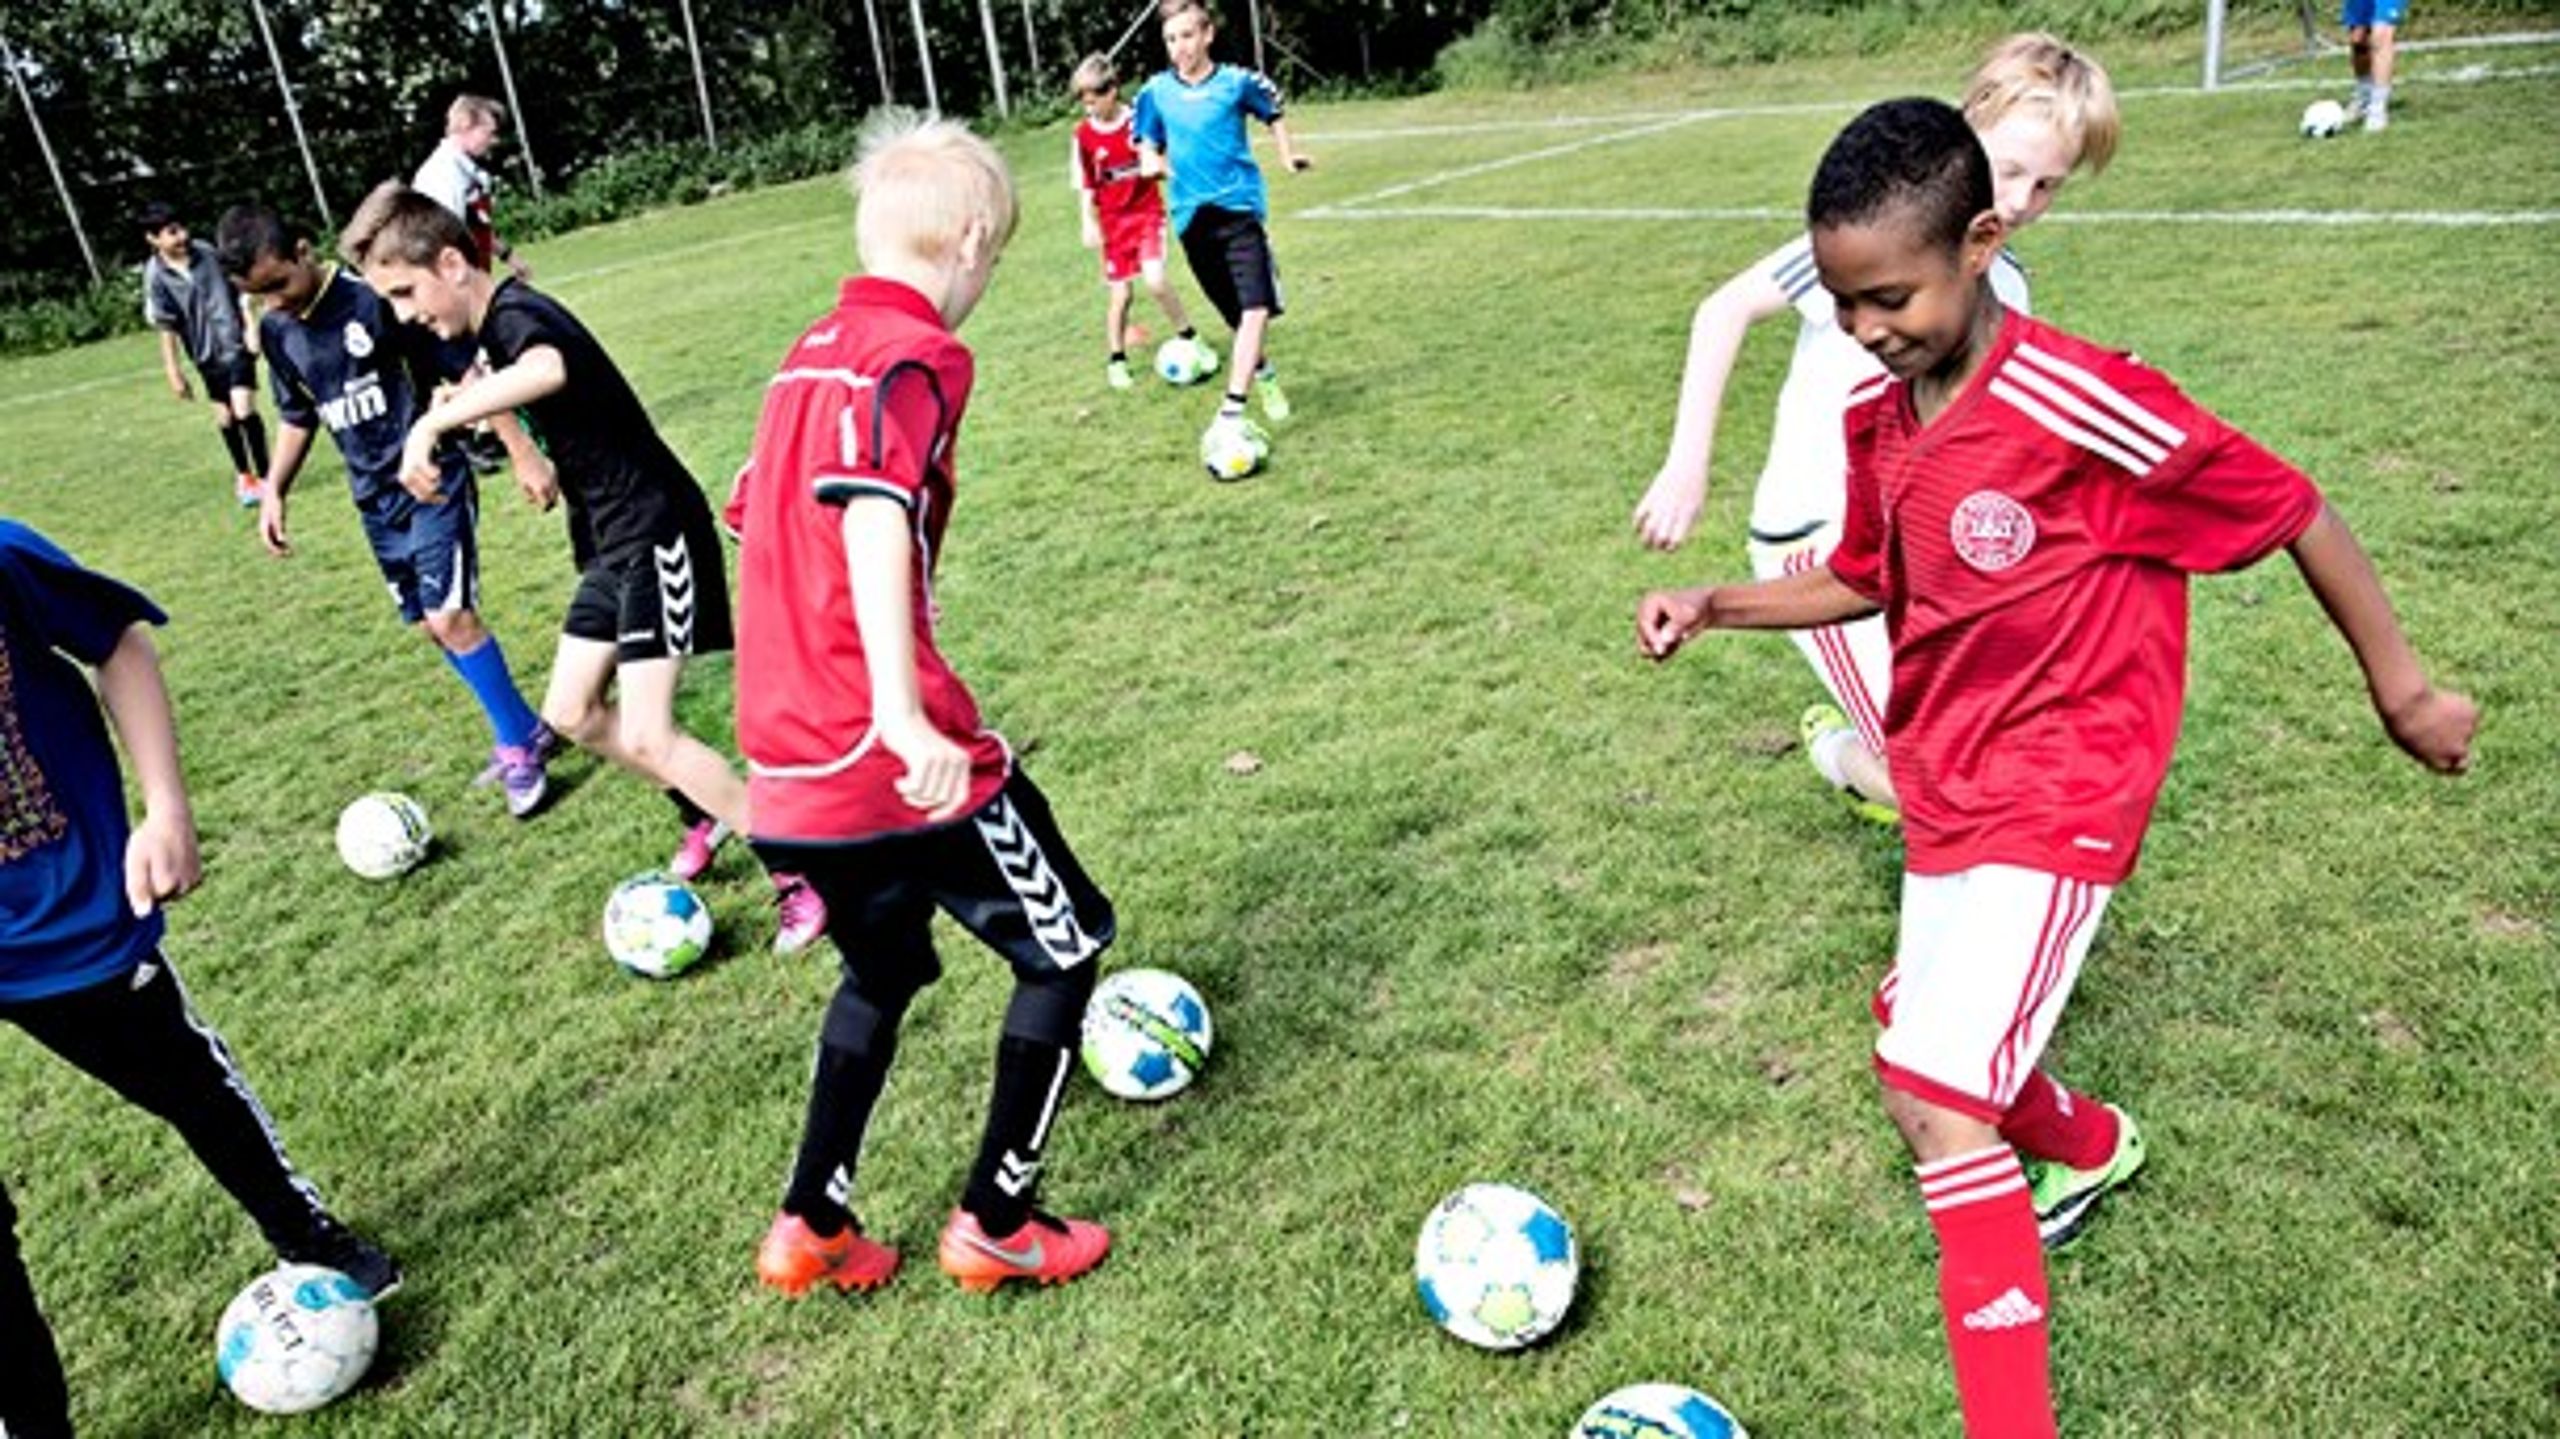 Fodbold er en effektiv&nbsp;integrator. Mere end hver tredje dreng med indvandrerbaggrund&nbsp;i Aarhus er medlem af en fodboldklub.&nbsp;